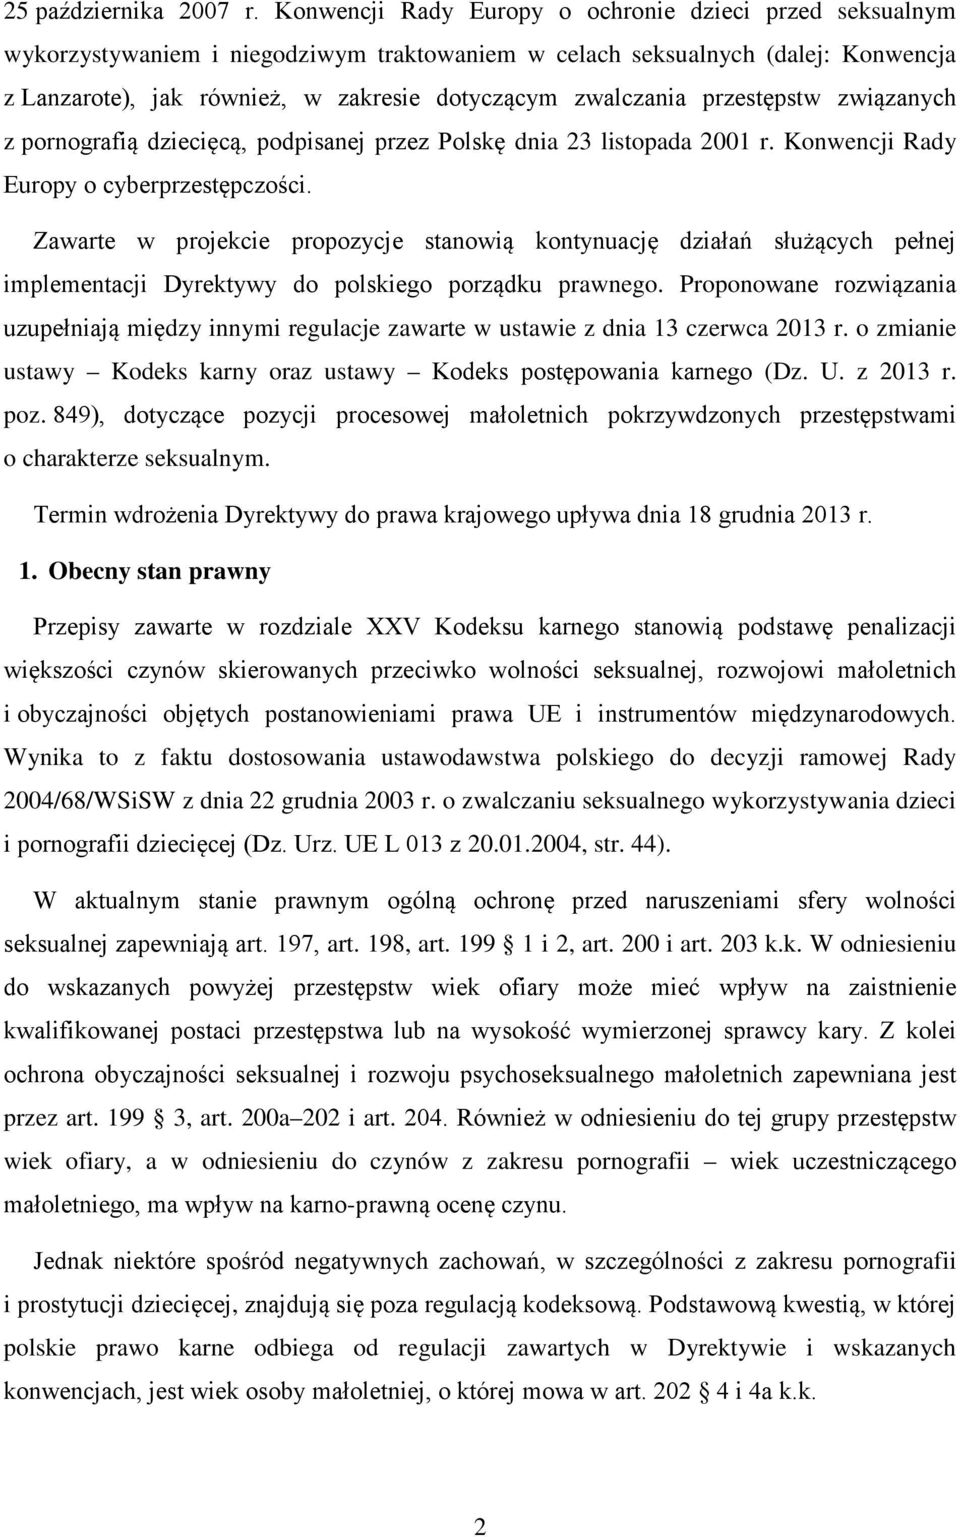 przestępstw związanych z pornografią dziecięcą, podpisanej przez Polskę dnia 23 listopada 2001 r. Konwencji Rady Europy o cyberprzestępczości.